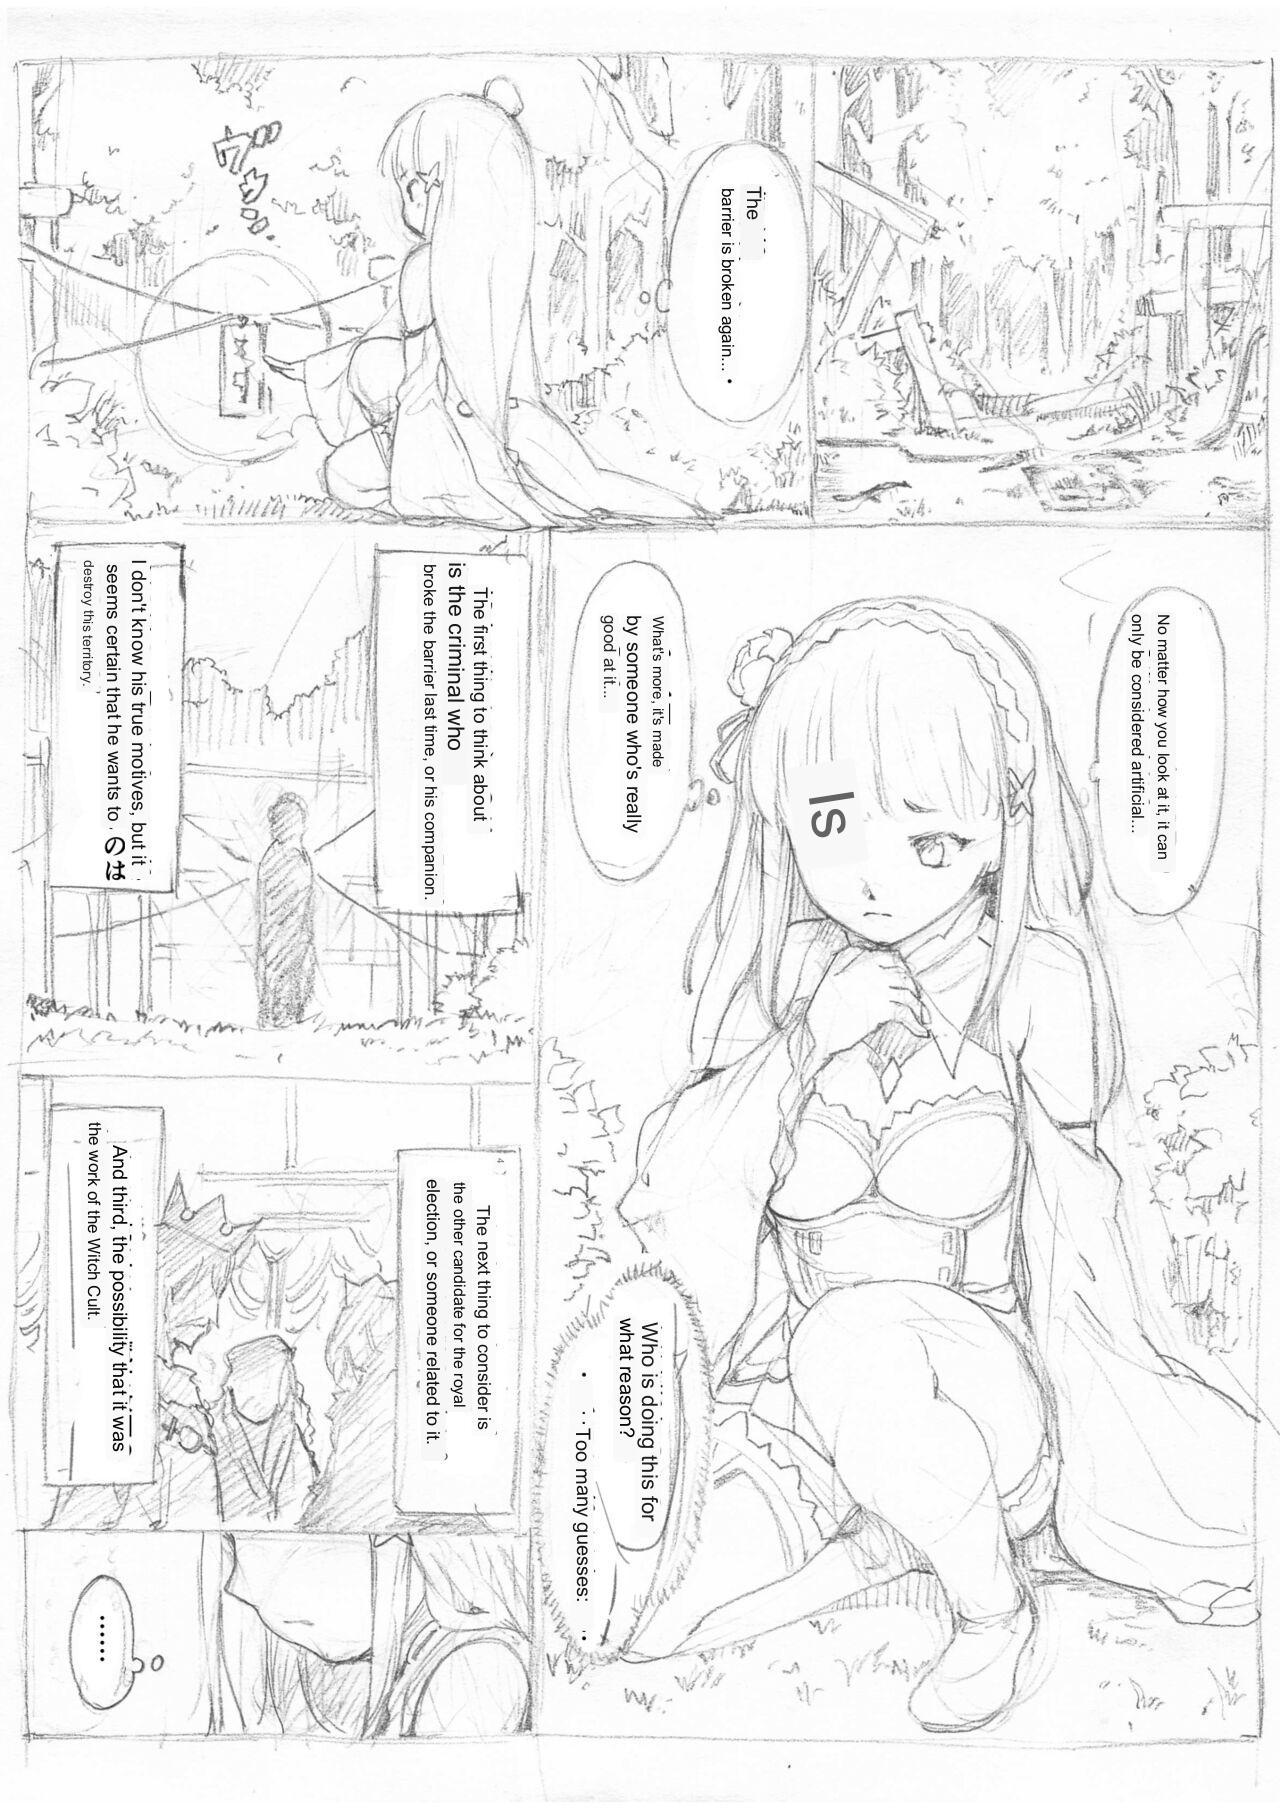 Fodendo [Fujiwara Shunichi] Emilia Kumo Ito Kousoku Manga (Re: Zero kara Hajimeru Isekai Seikatsu) google translate - Original Rabo - Picture 1